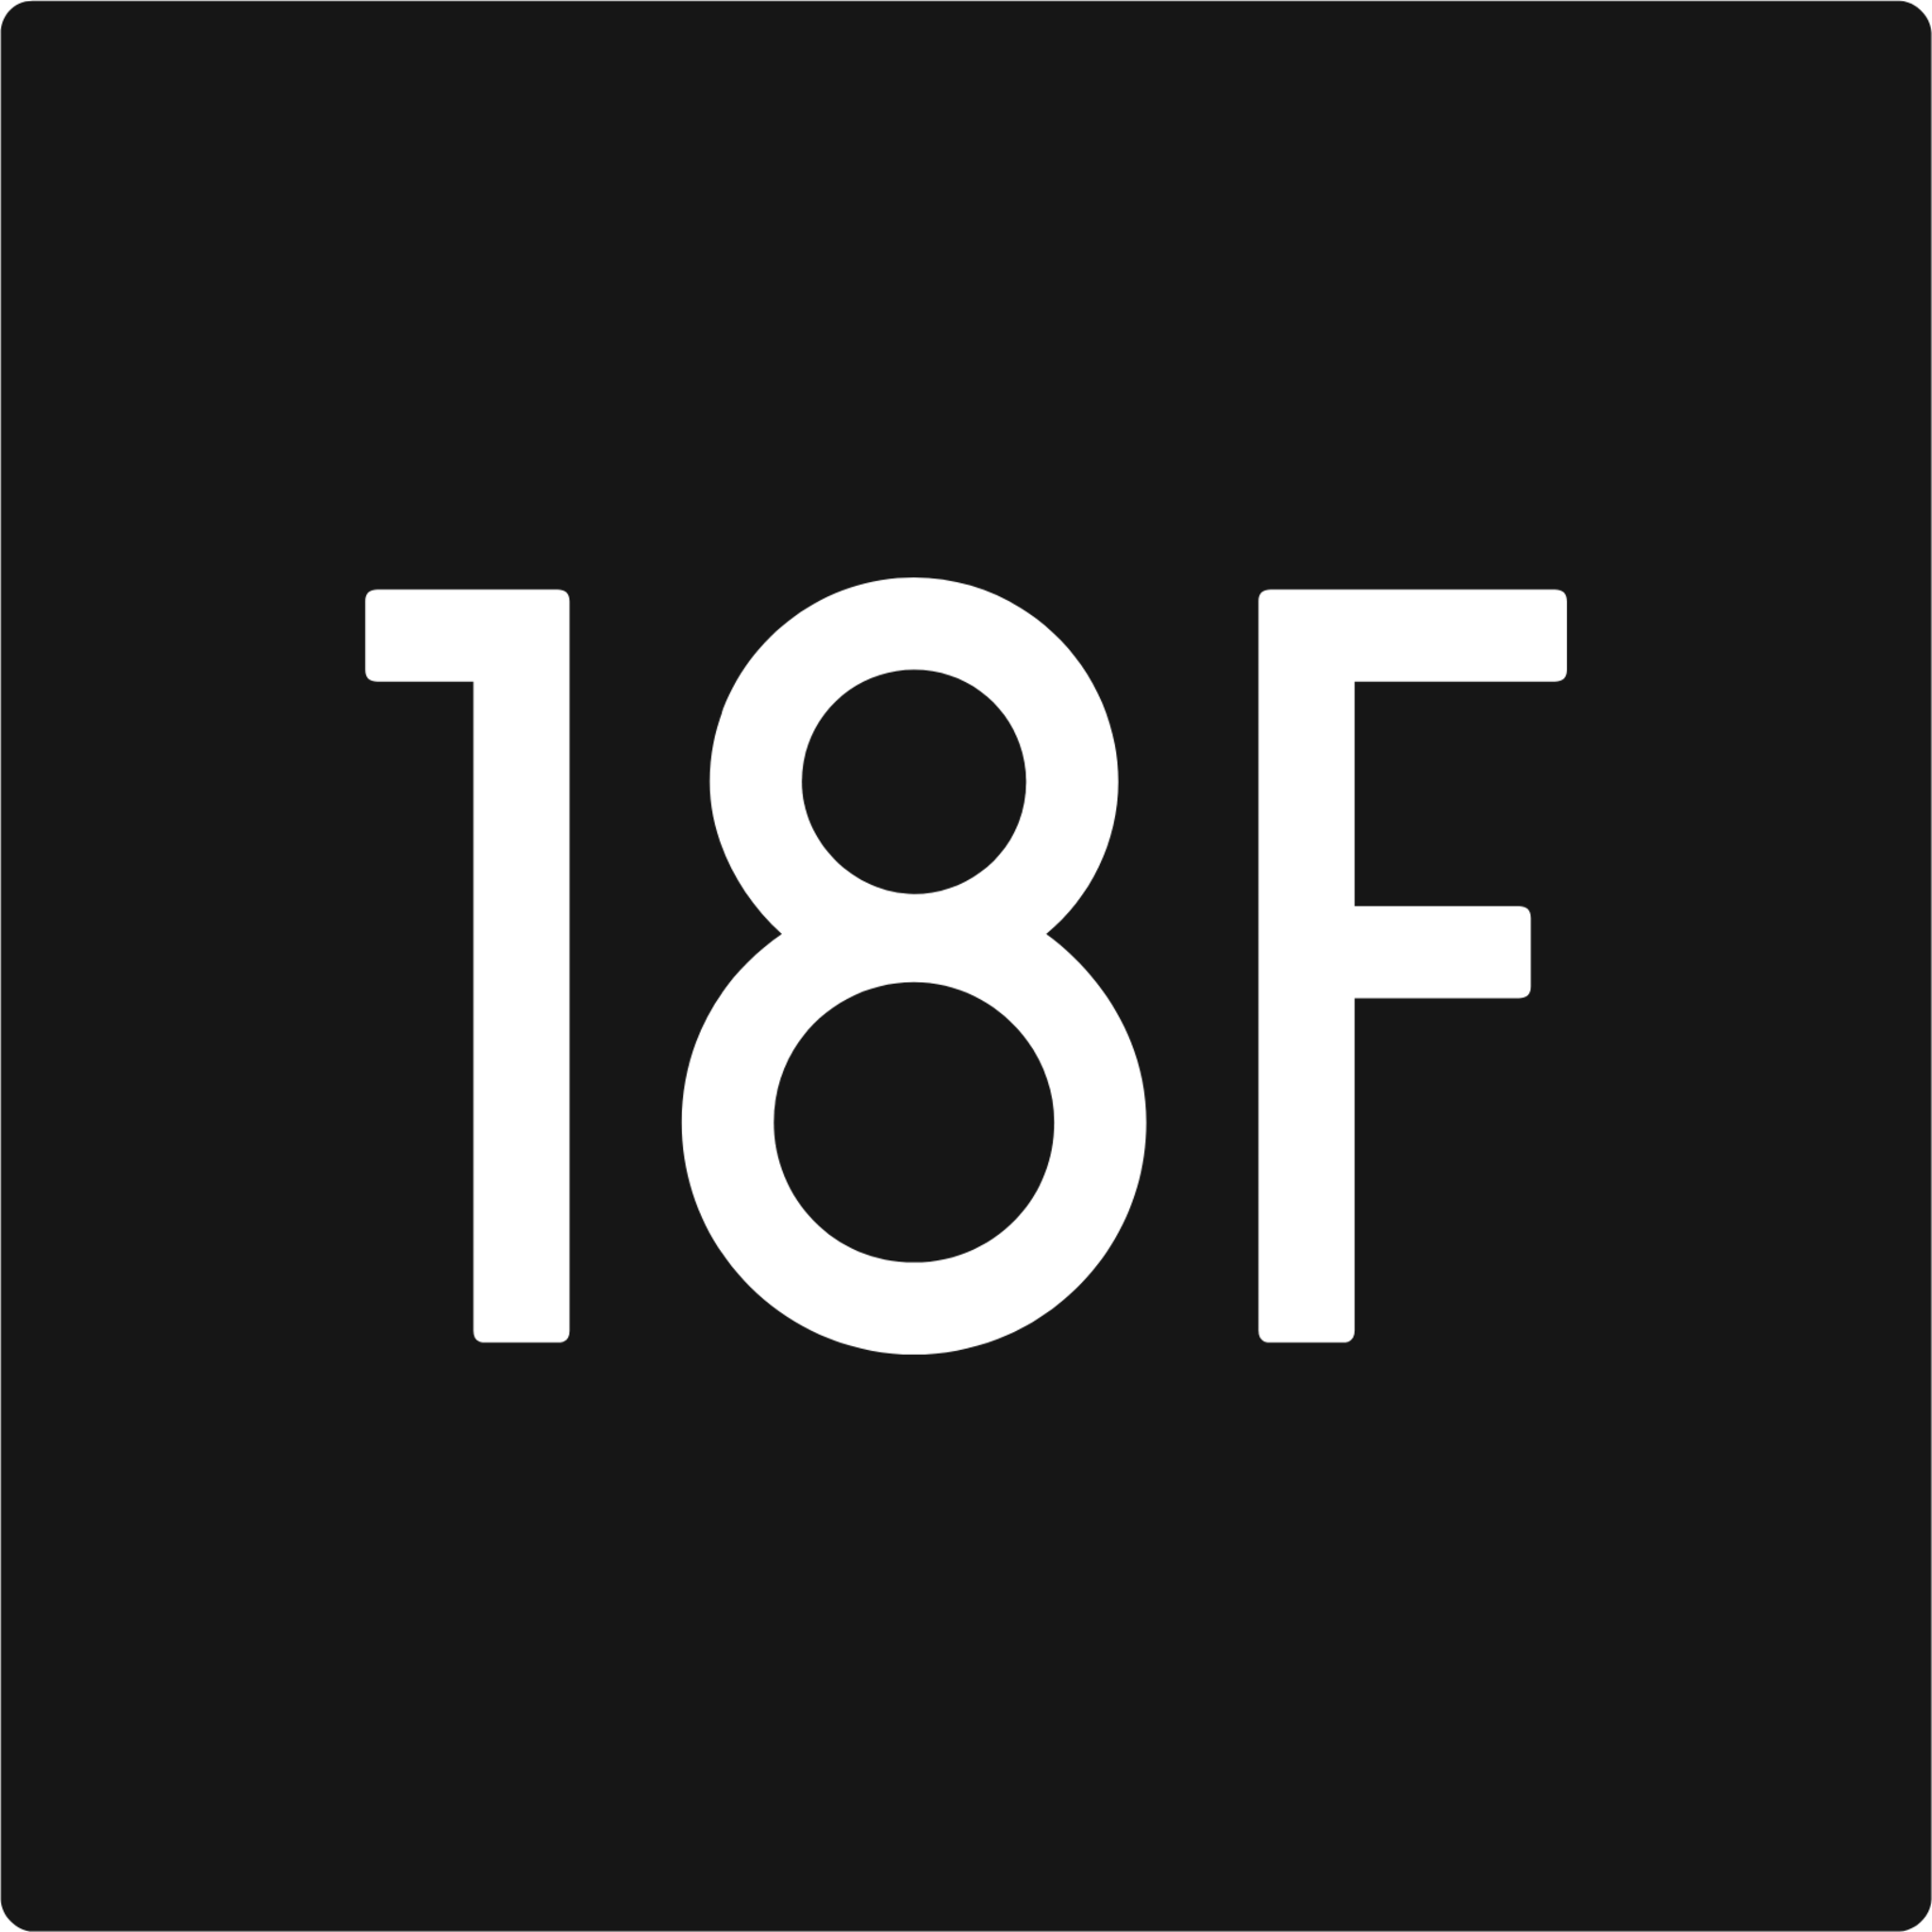 18f icon